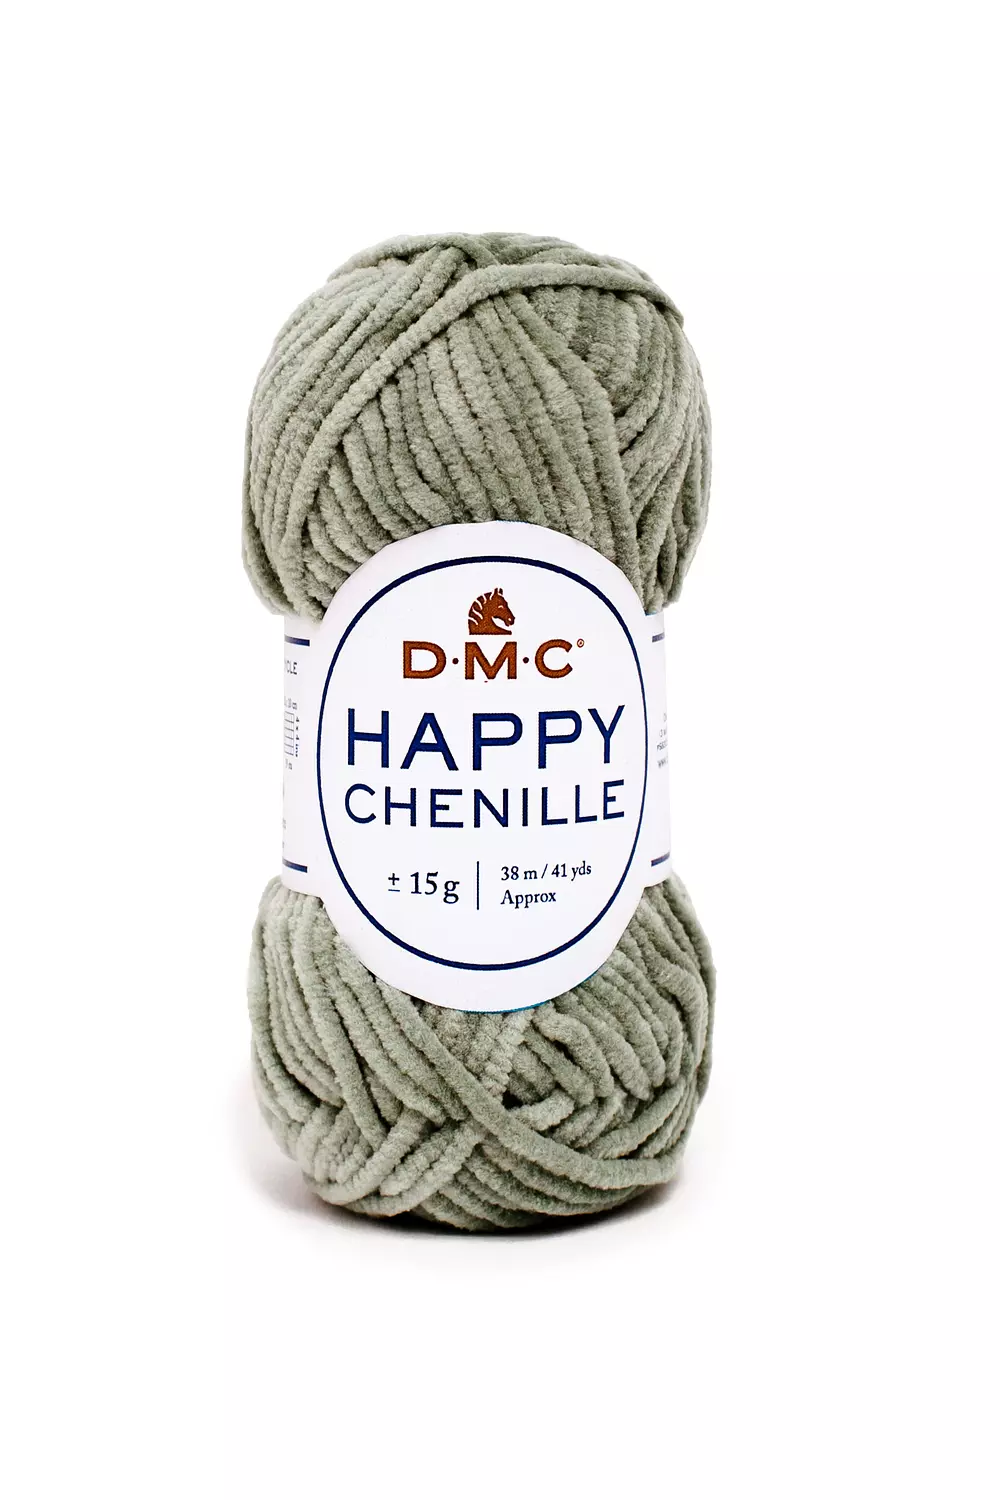 Buy DMC Happy Chenille Fluffy, Soft Crochet Yarn for Amigurumi, 15g  38m/41yd Online in India 